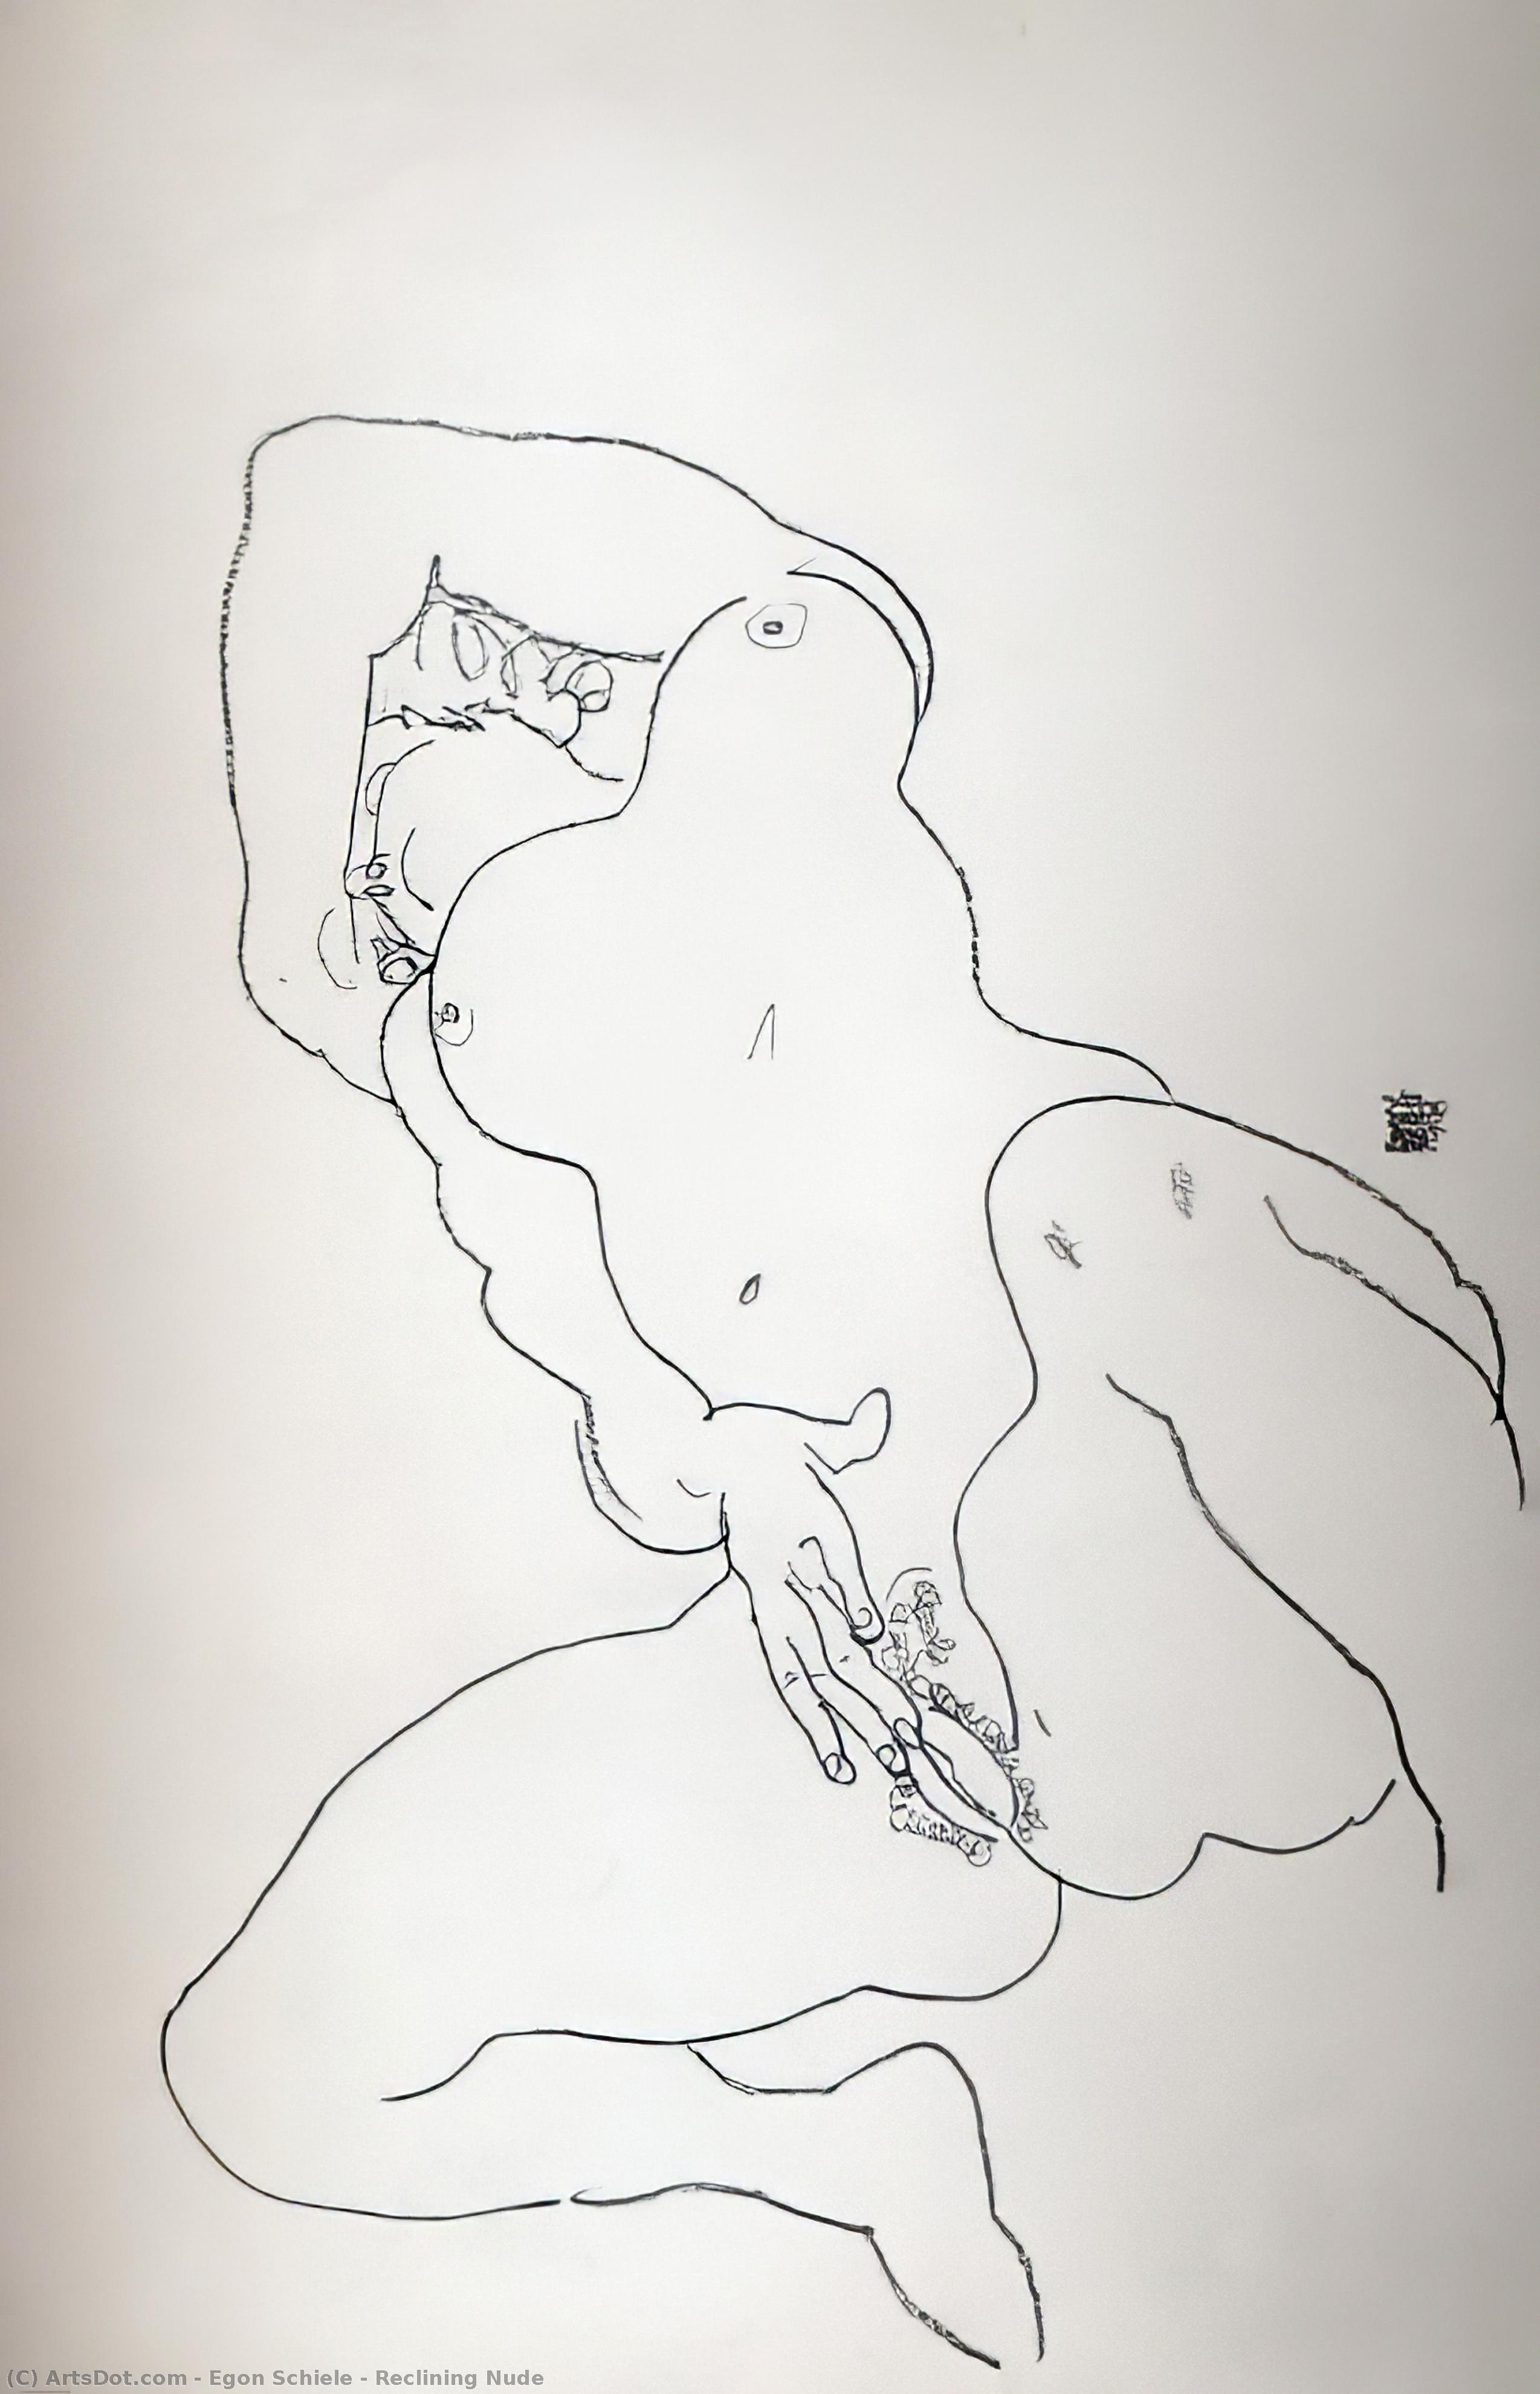 WikiOO.org - Encyclopedia of Fine Arts - Målning, konstverk Egon Schiele - Reclining Nude